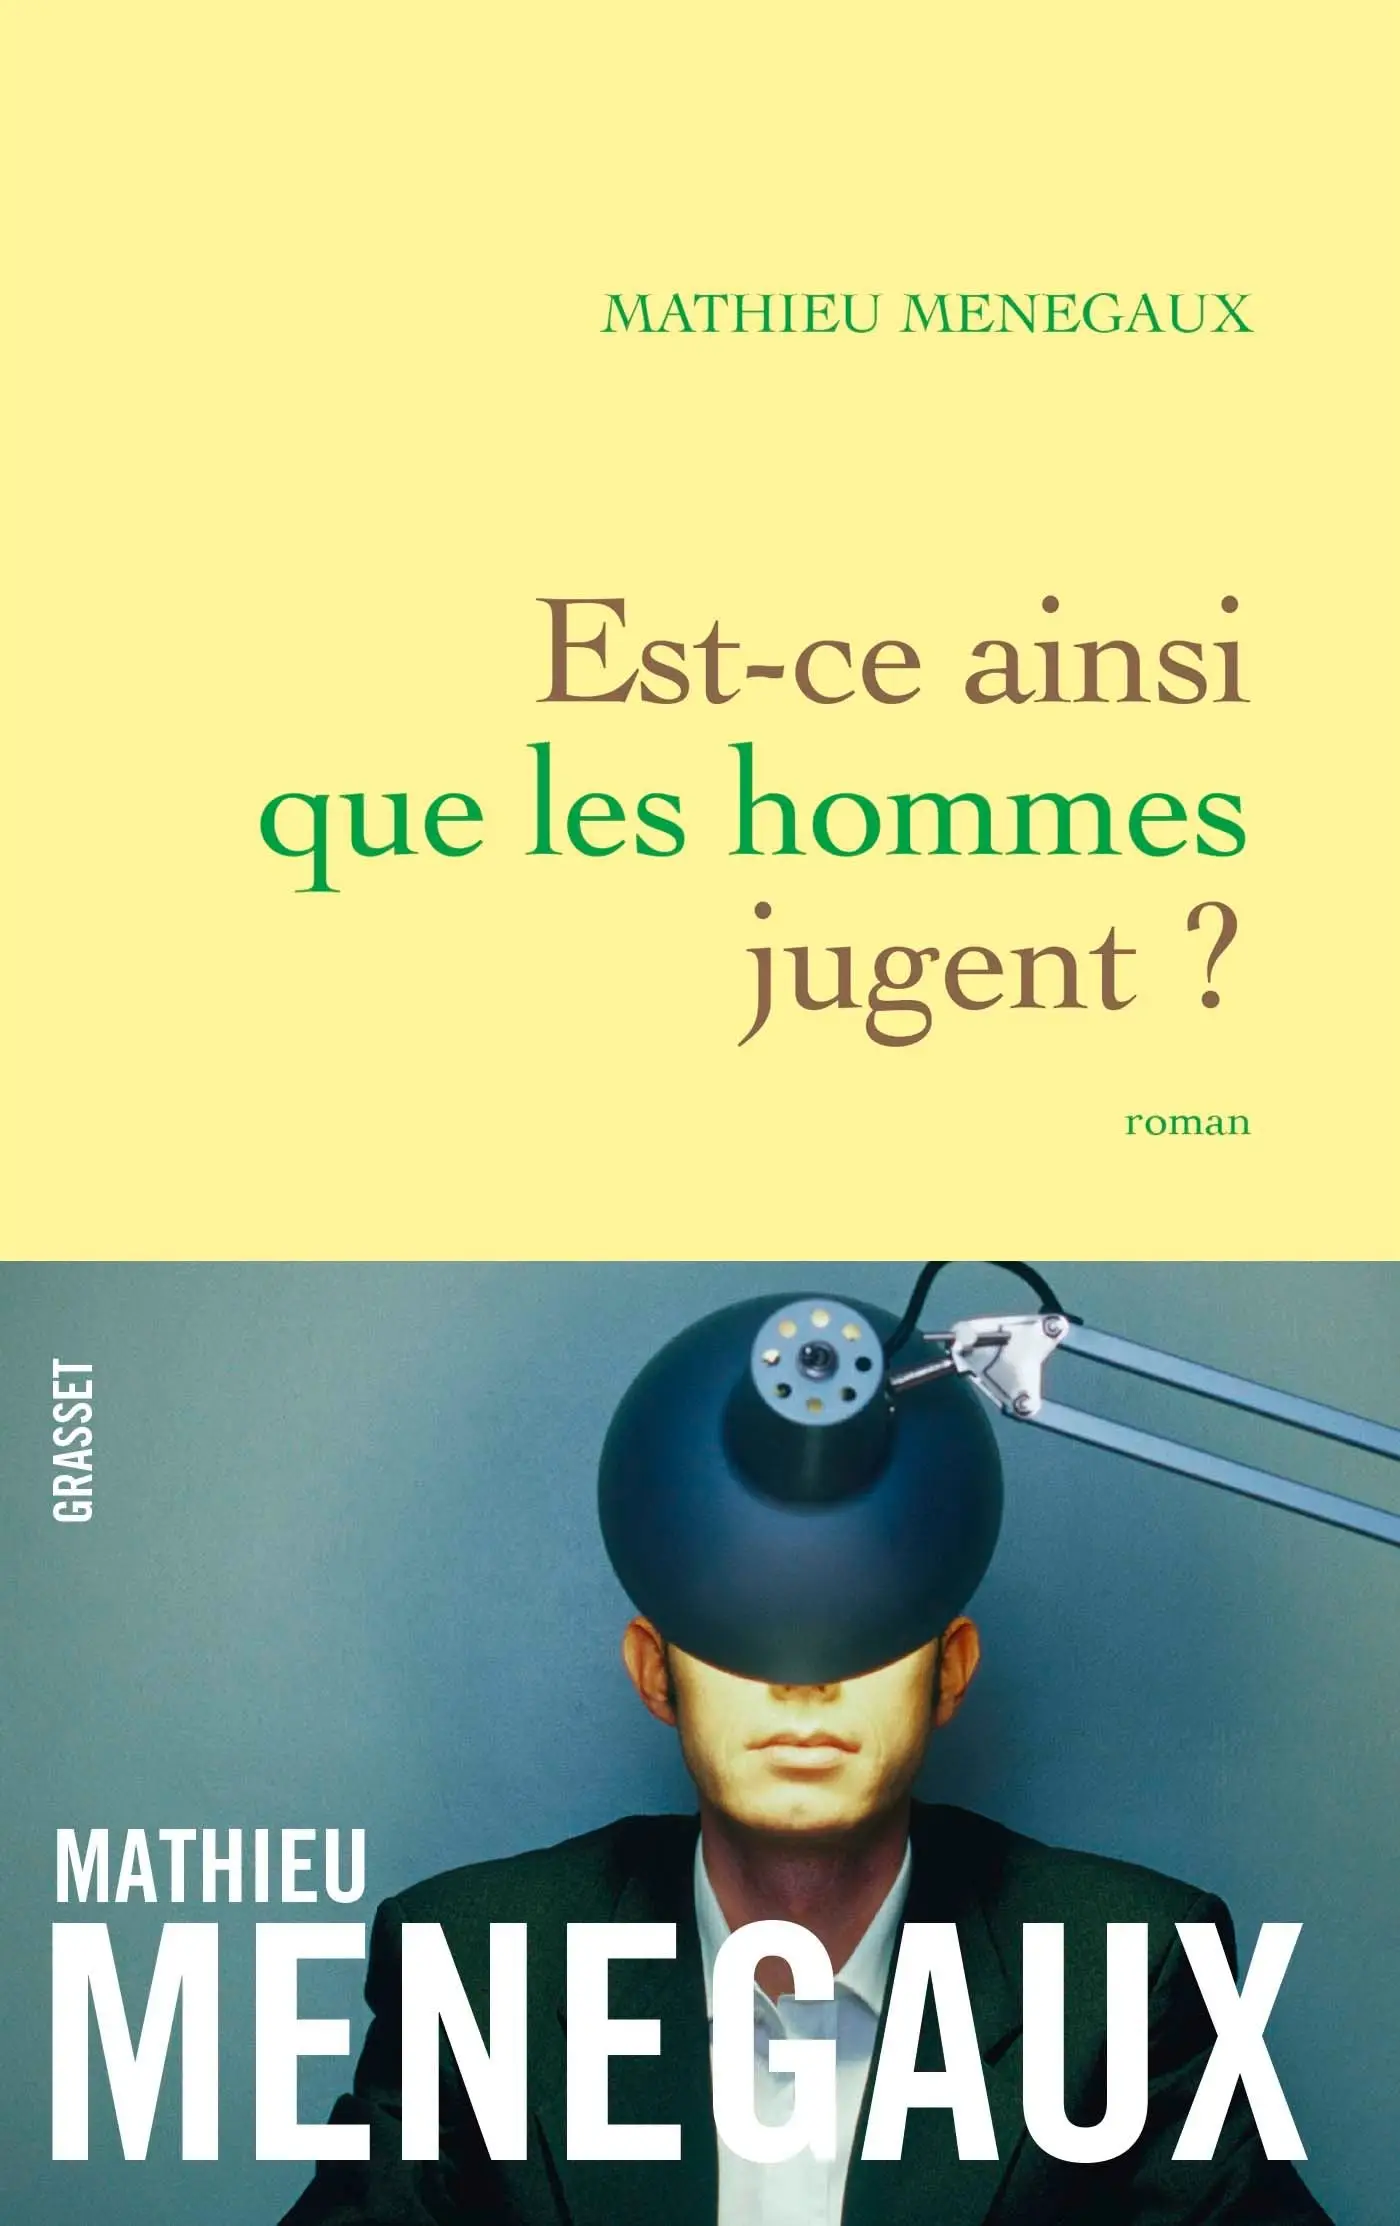 Est-ce ainsi que les hommes jugent ?: roman - Mathieu Menegaux, Livre pas cher Amazon